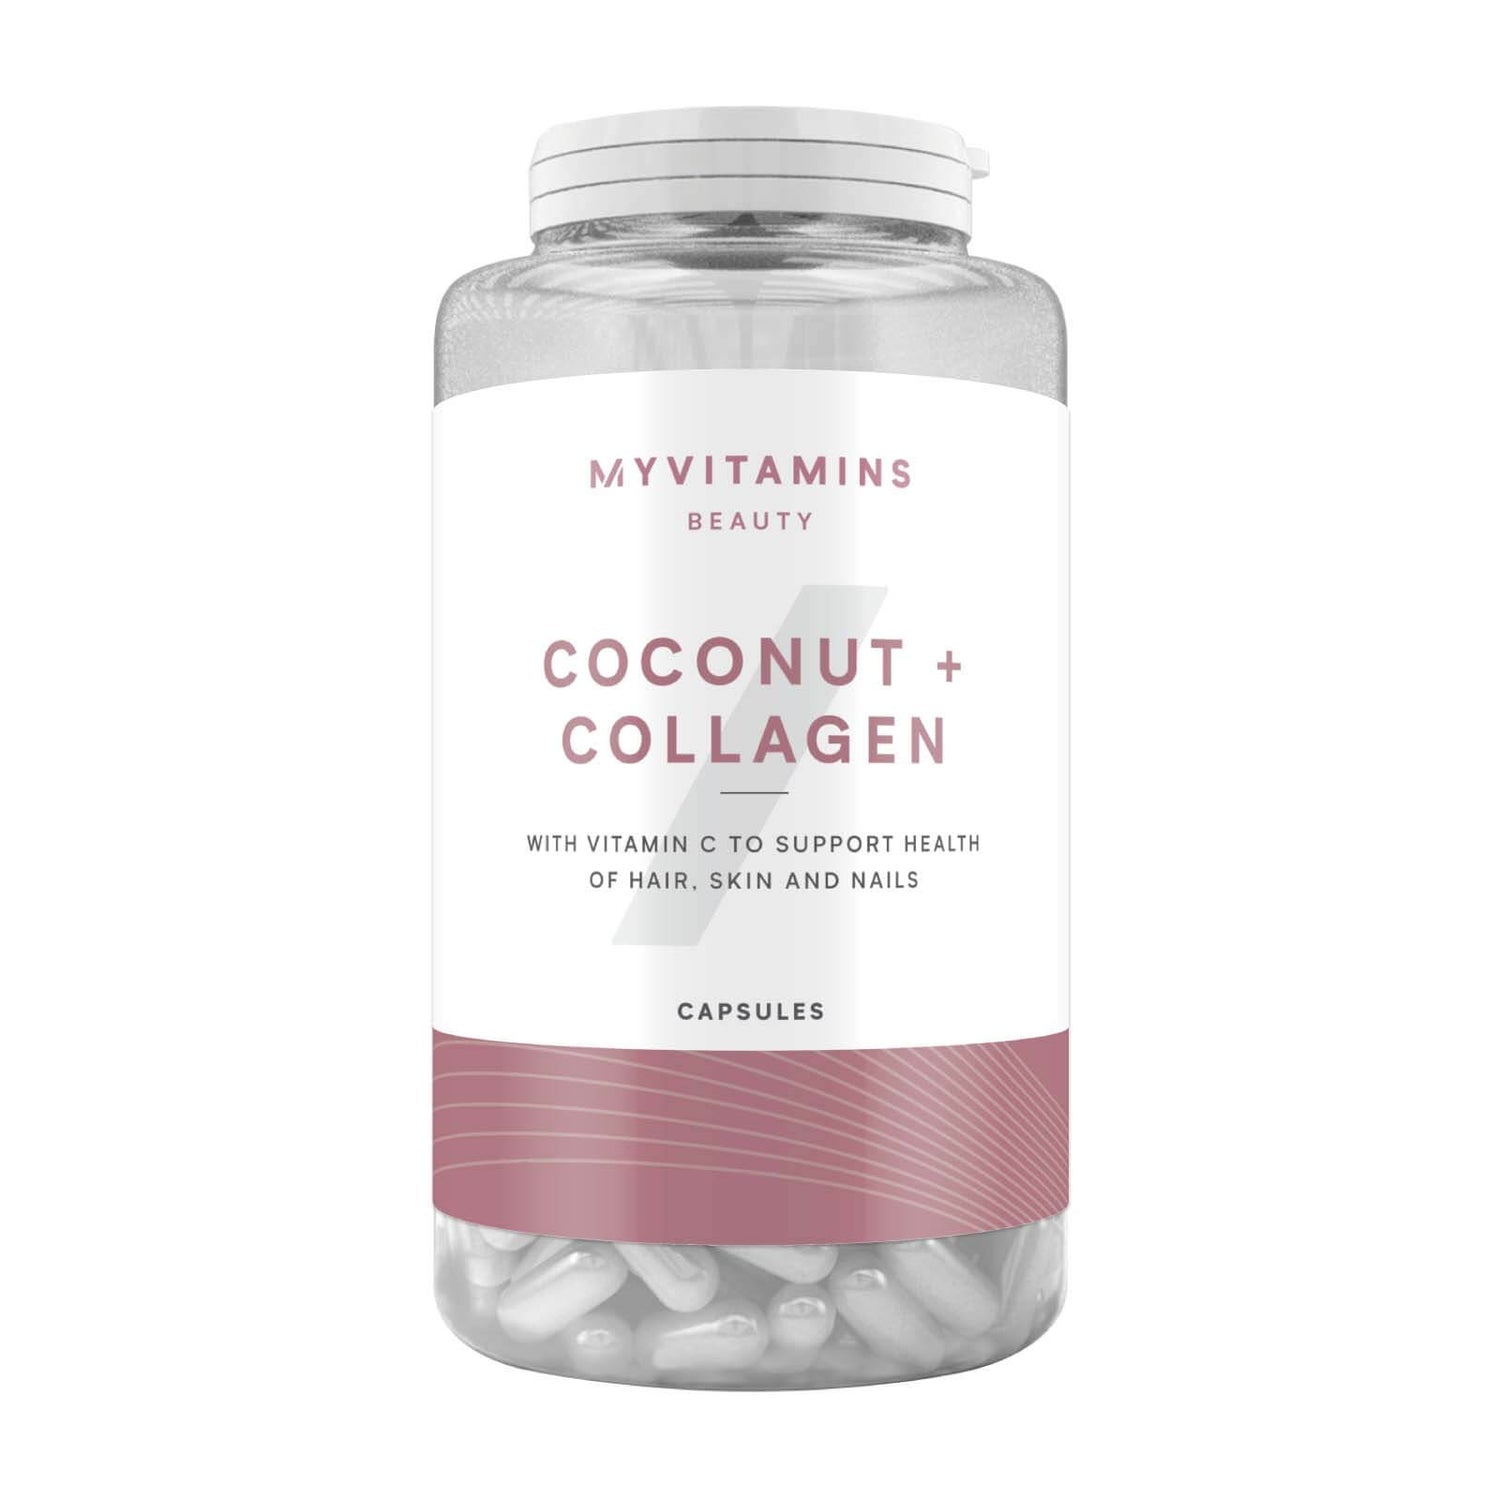 Myvitamins - Beauty - Coconut & Collagen - 60 Kapseln